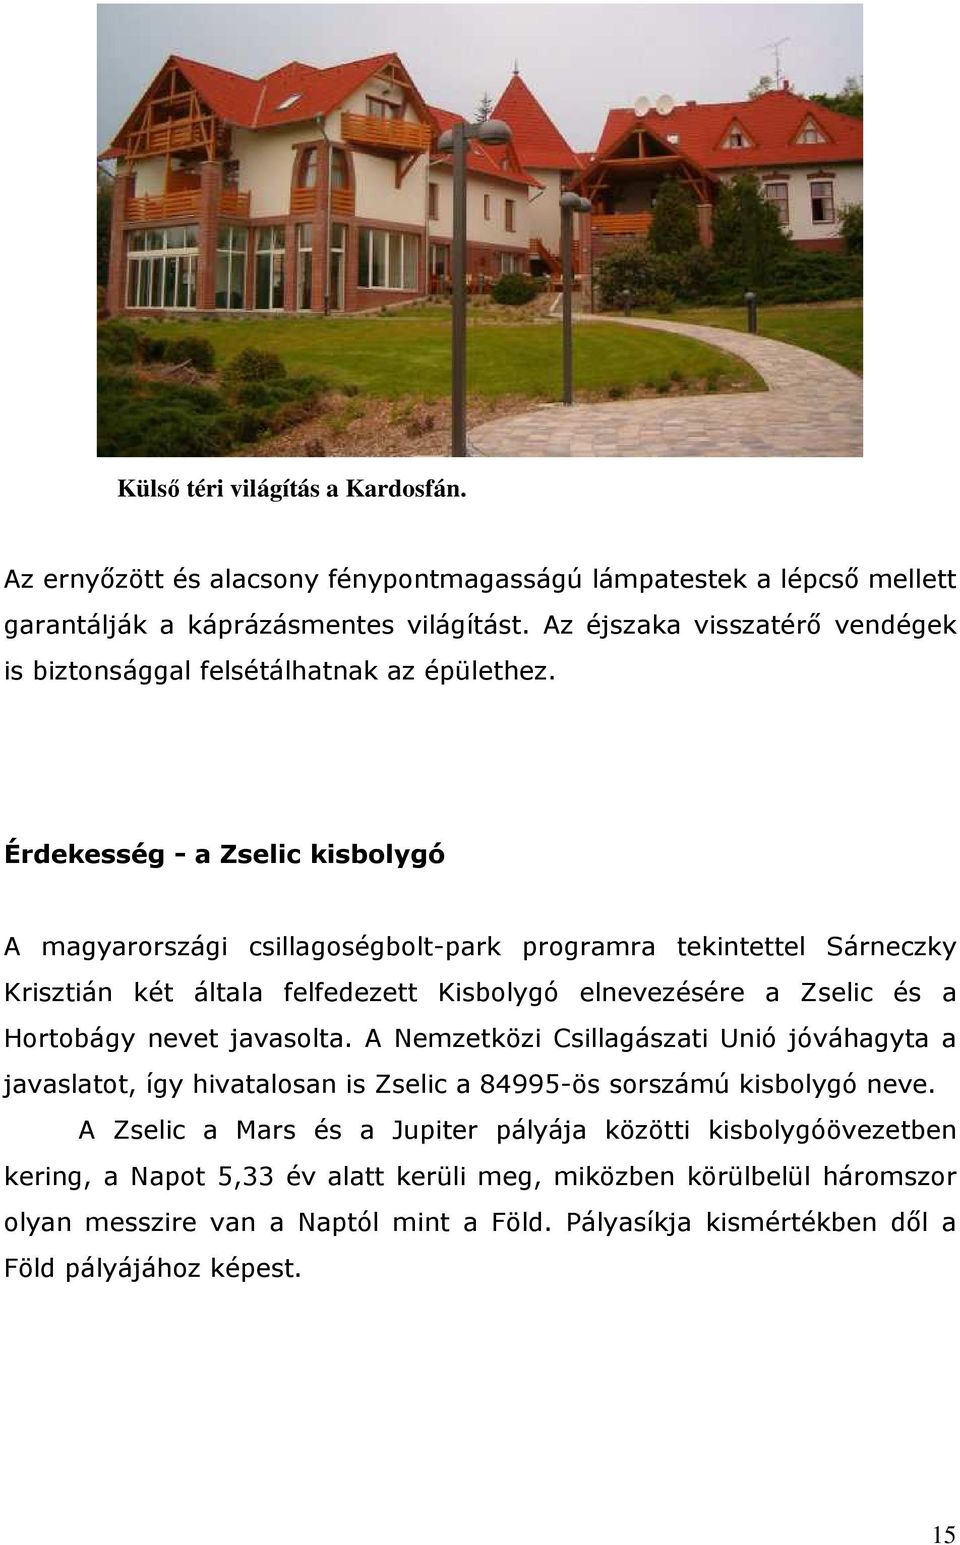 Érdekesség - a Zselic kisbolygó A magyarországi csillagoségbolt-park programra tekintettel Sárneczky Krisztián két általa felfedezett Kisbolygó elnevezésére a Zselic és a Hortobágy nevet